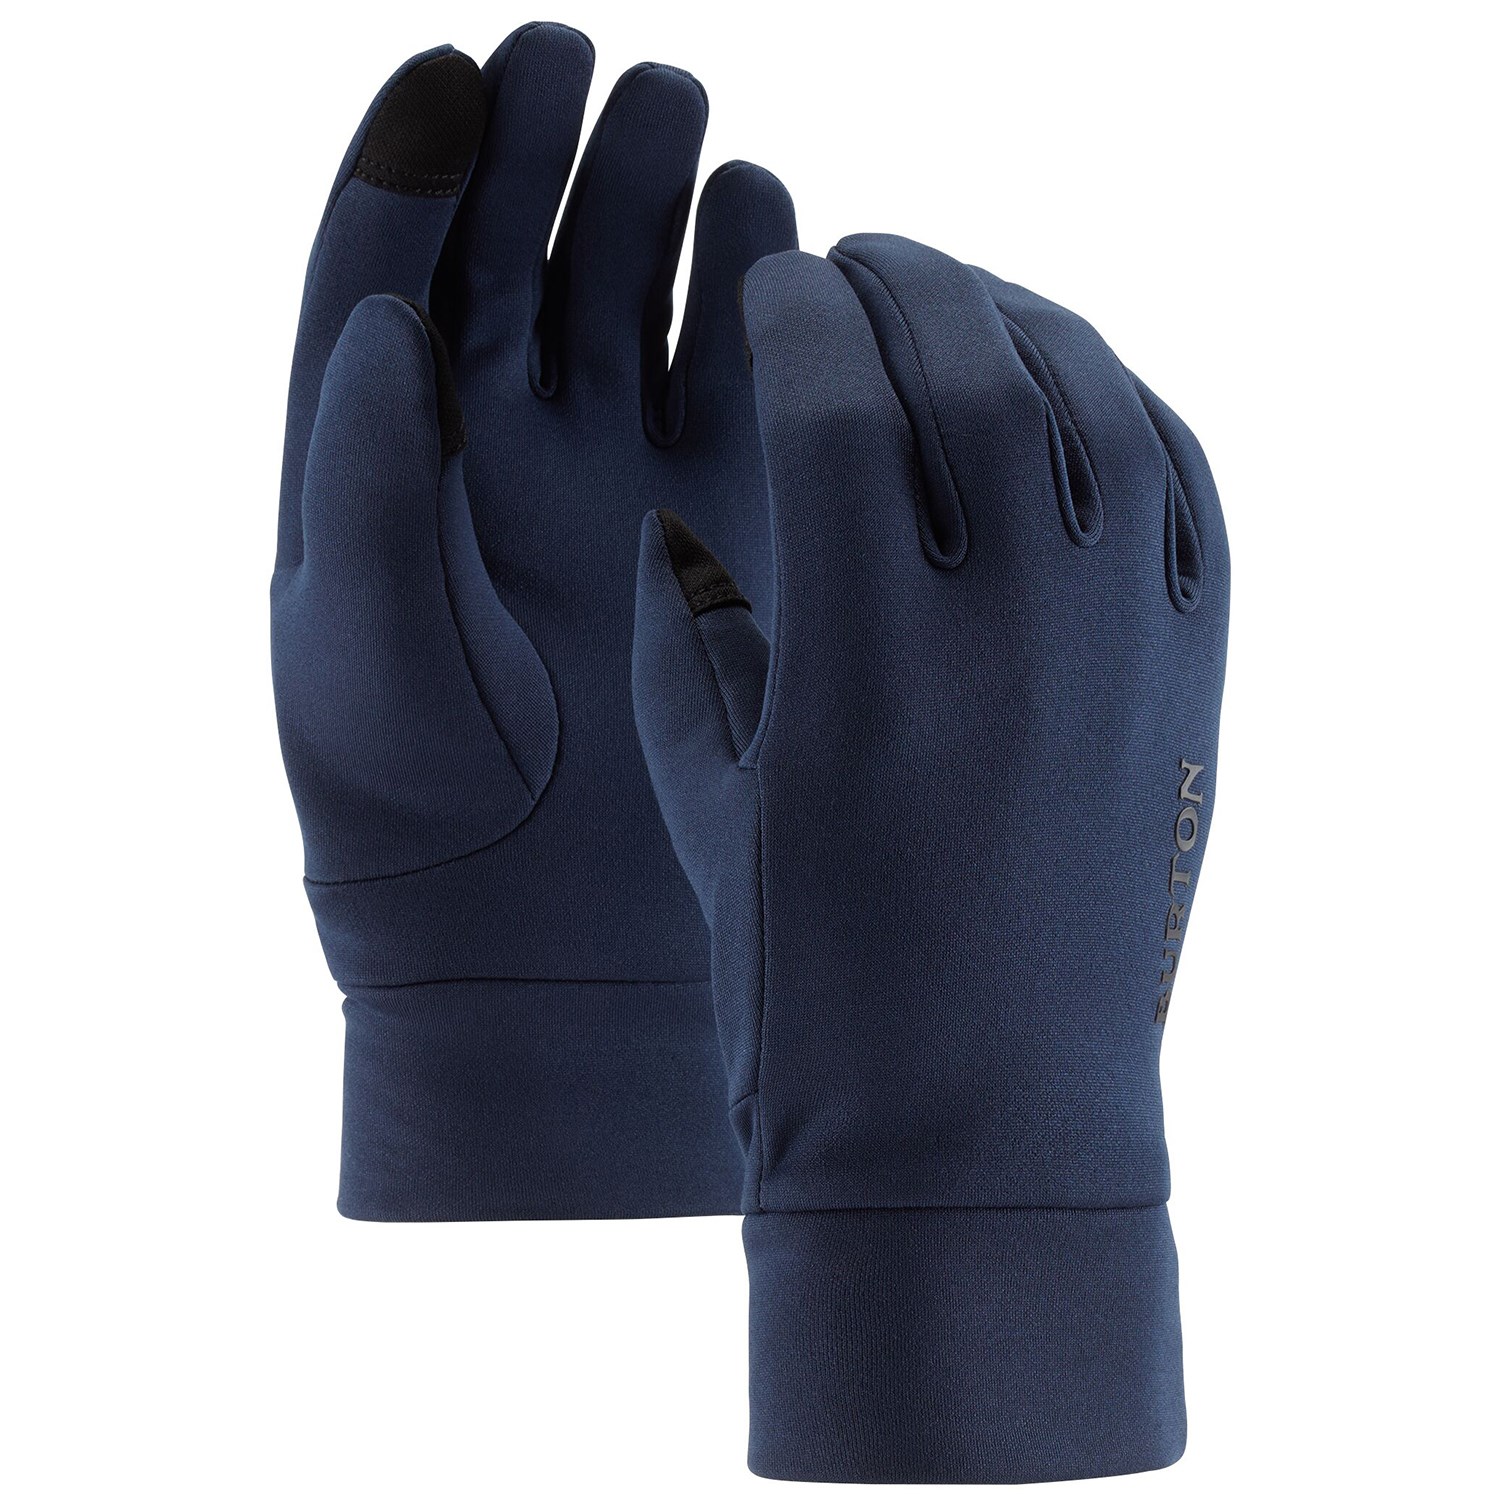 Лыжные перчатки Burton Screengrab Liner, синий цена и фото